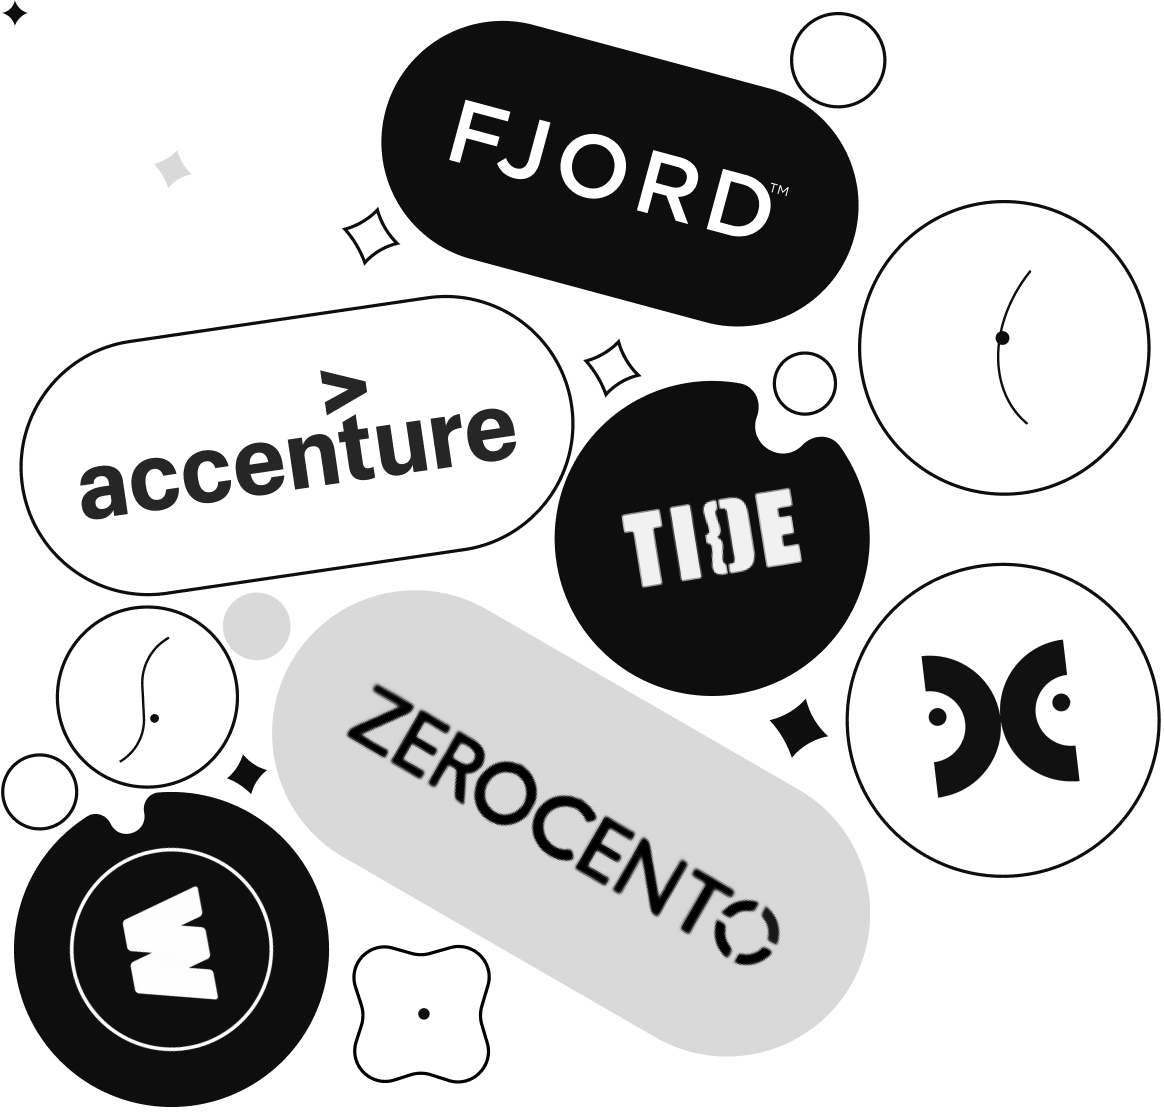 Immagine evocativa. Composit dei loghi di alcune aziende per le quali Francesco Provenzano è stato un creativo, con ruoli diversi. Zerocento, Enhancers, Domino Proudly interactive, Tide, Fjord e Accenture.